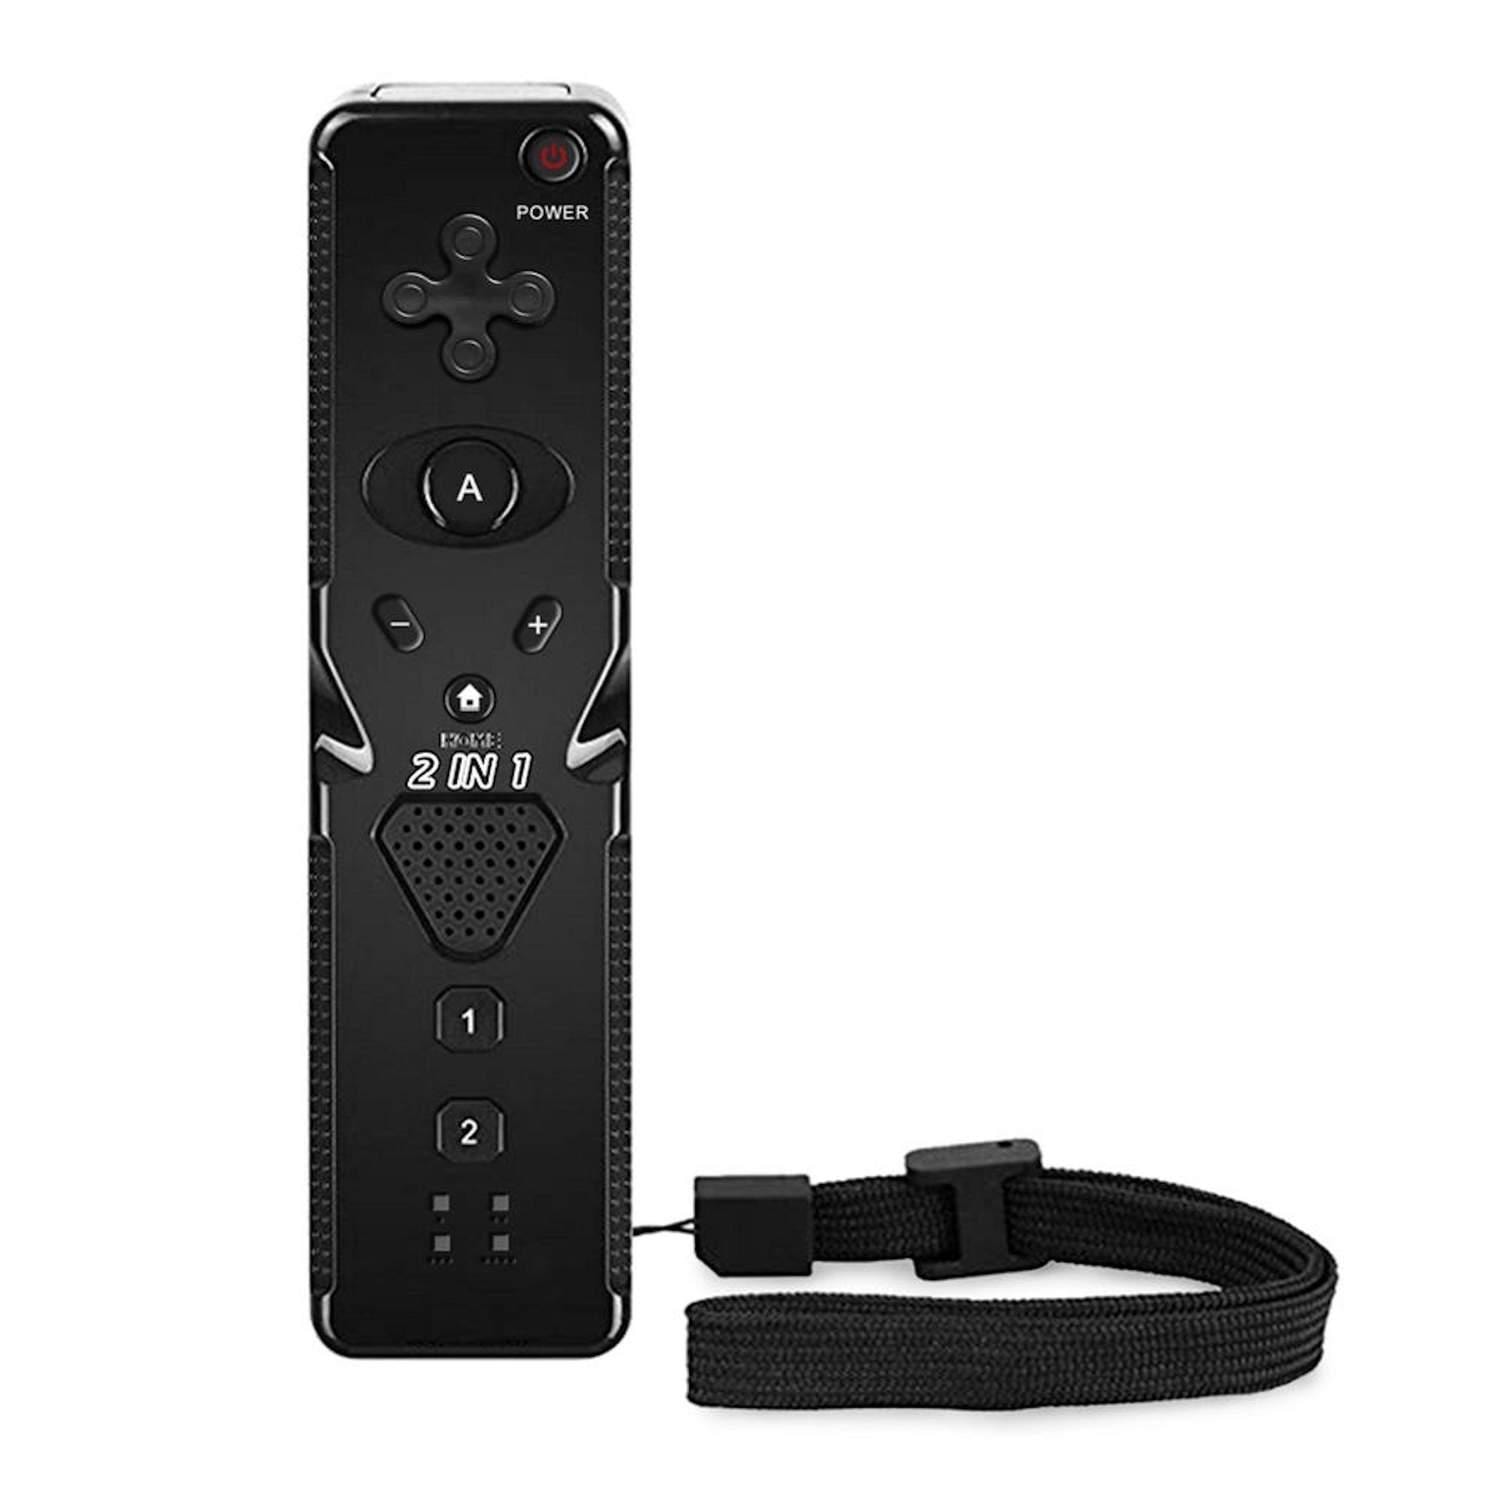 Wii Remote Plus och Nunchuk controller 6-axis (1 av 15)